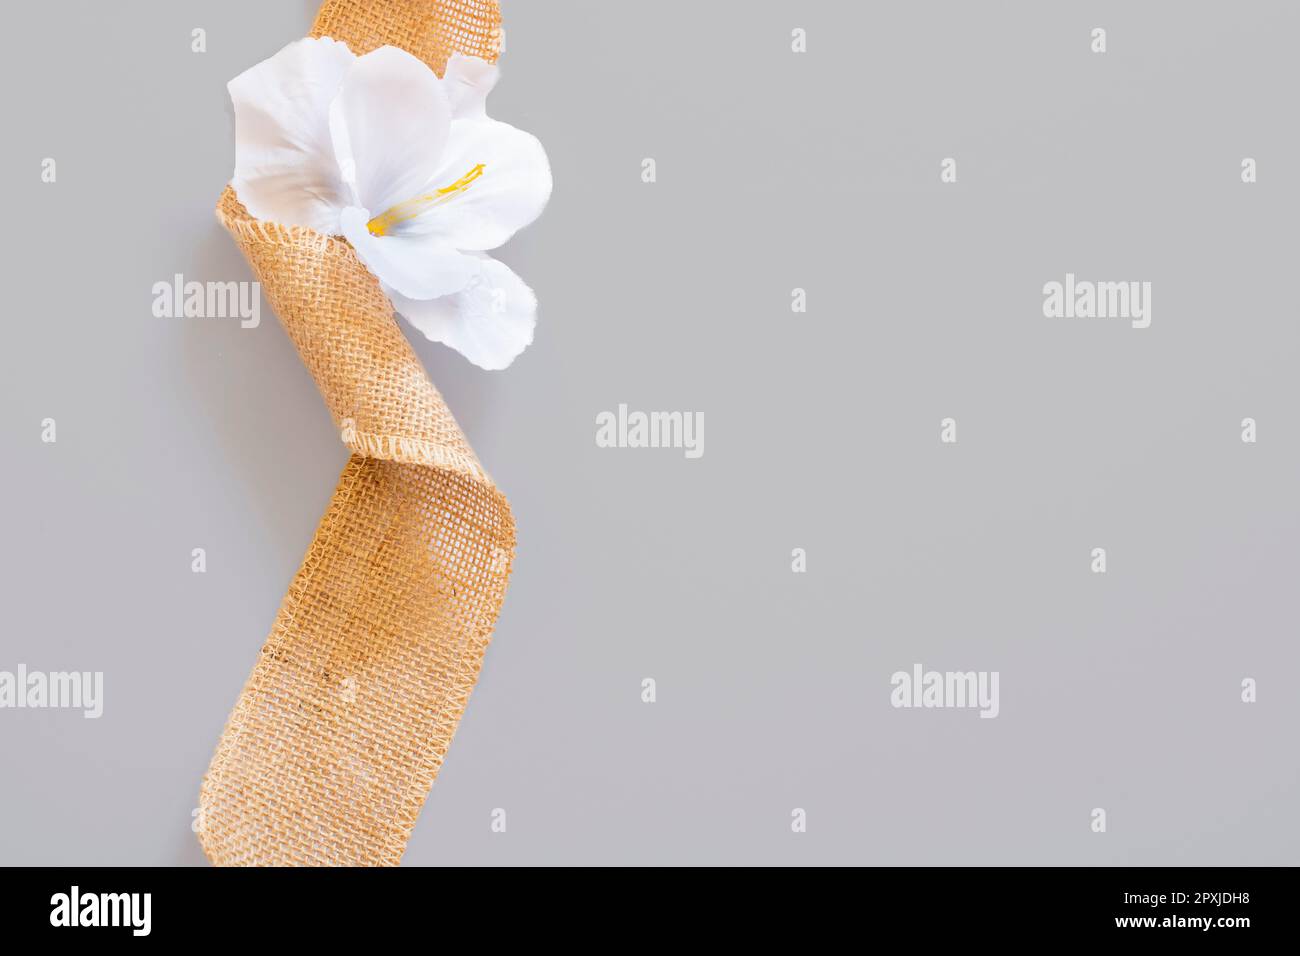 ruban de jute brun avec fleur blanche sur fond gris Banque D'Images